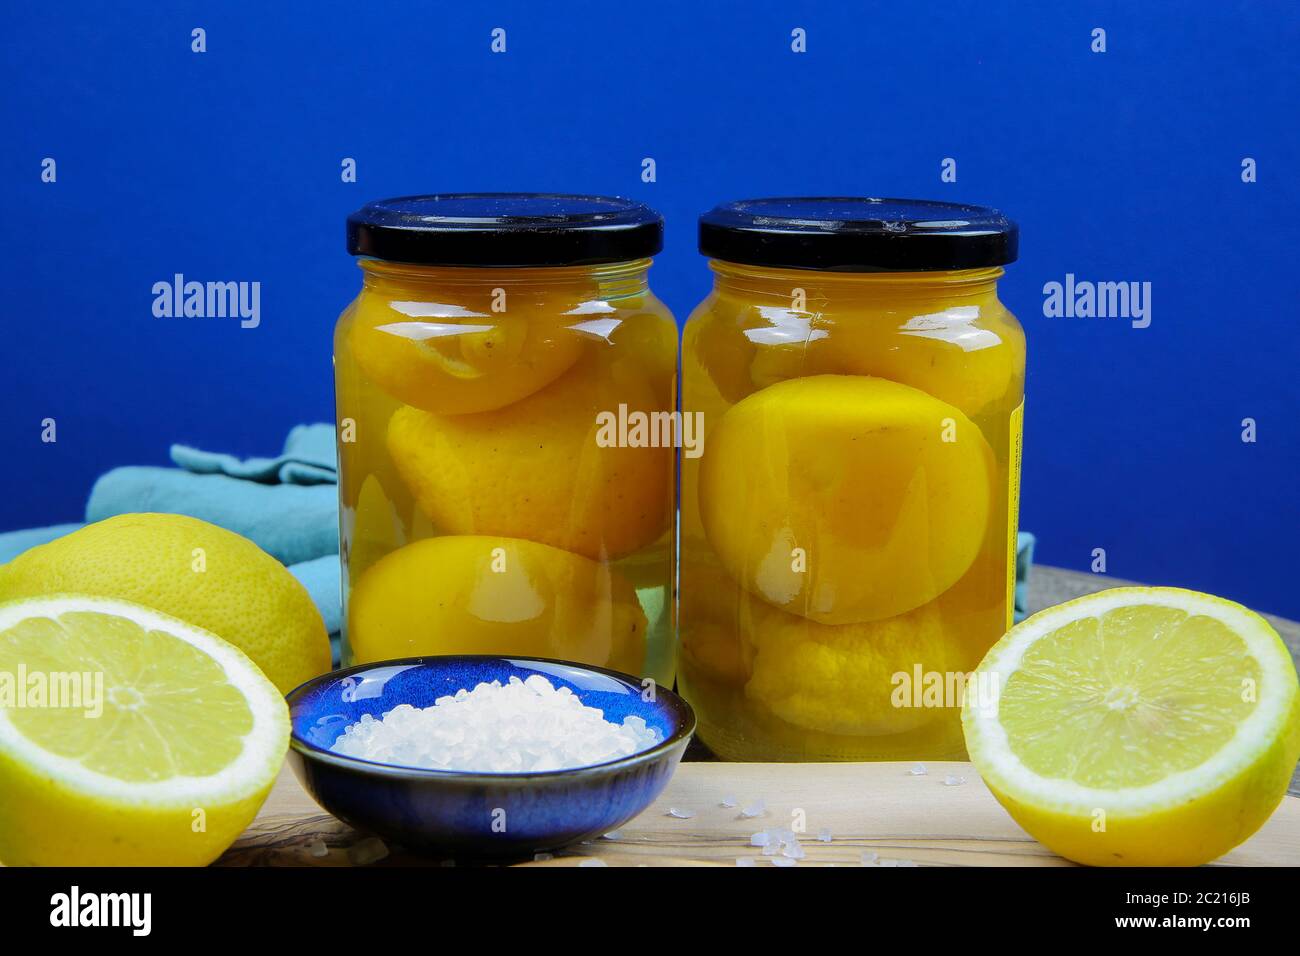 Preparación de limones de sal en conserva marroquí: Primer plano de cítricos amarillos aislados en rodajas, cuenco azul y cuchara de madera con sa de mar gruesa Foto de stock